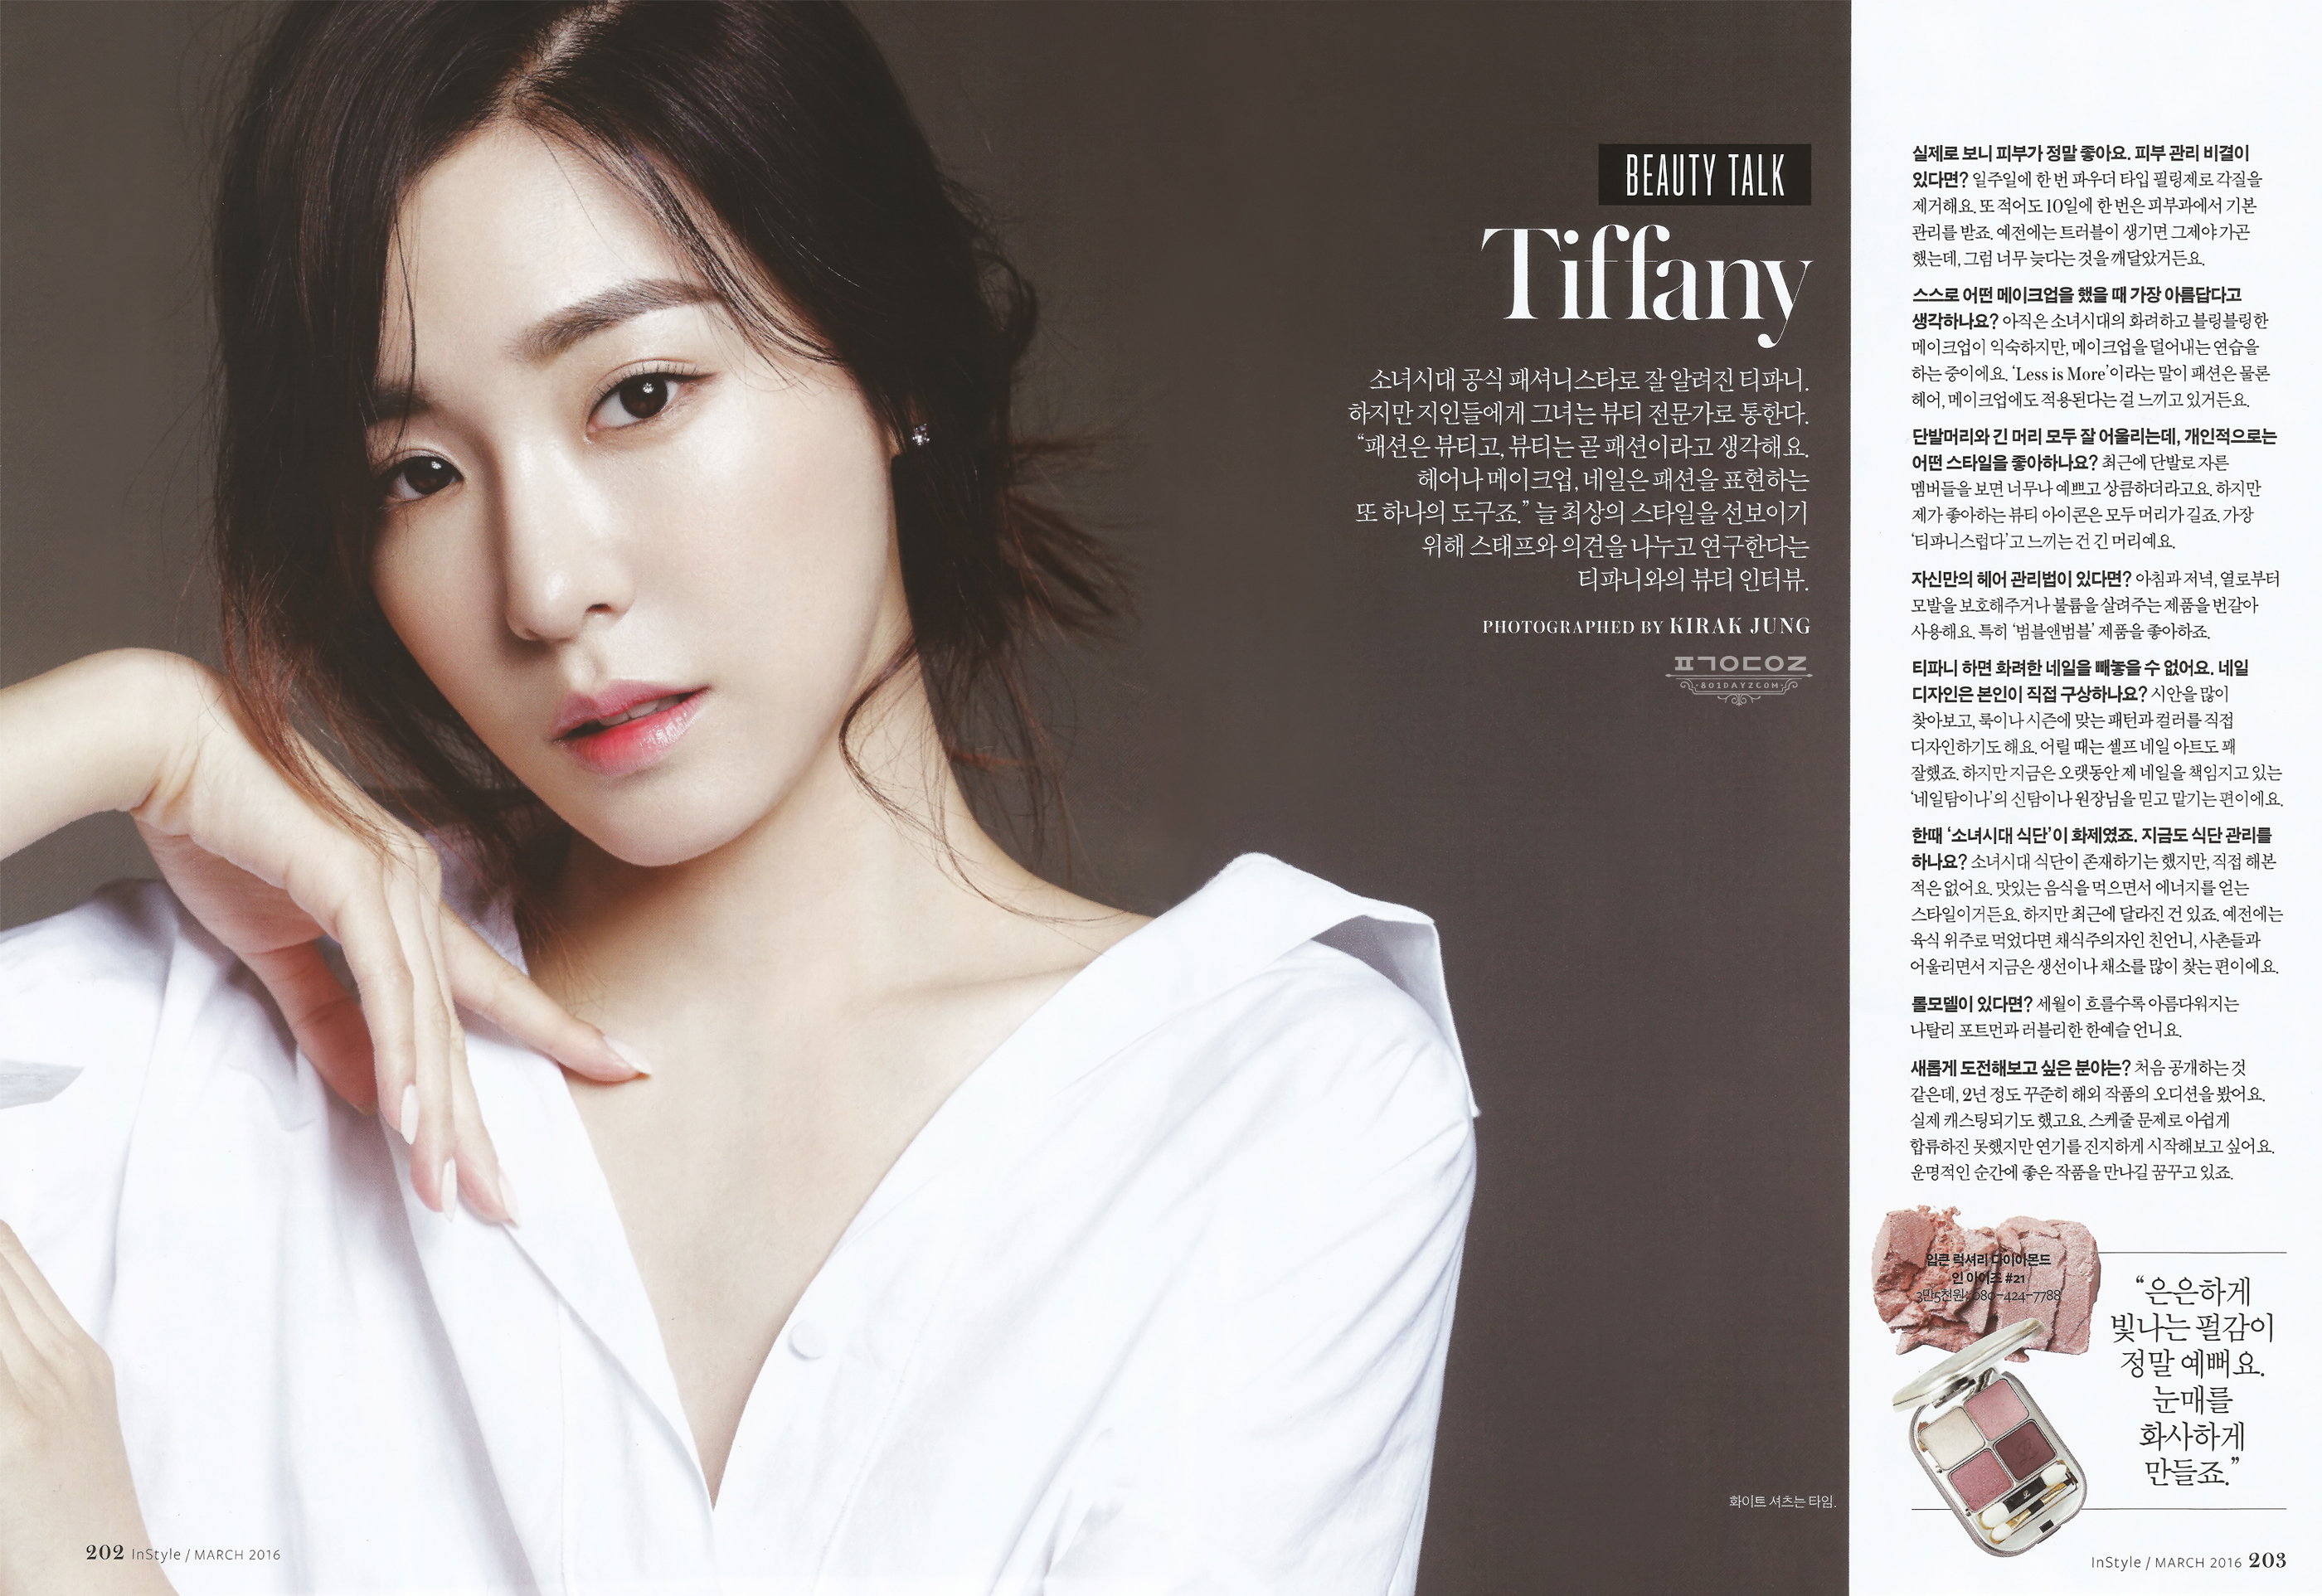 [PIC][21-02-2016]Tiffany xuất hiện trên ấn phẩm tháng 3 của tạp chí "InStyle" 225A4E4D56C89C67349C5D